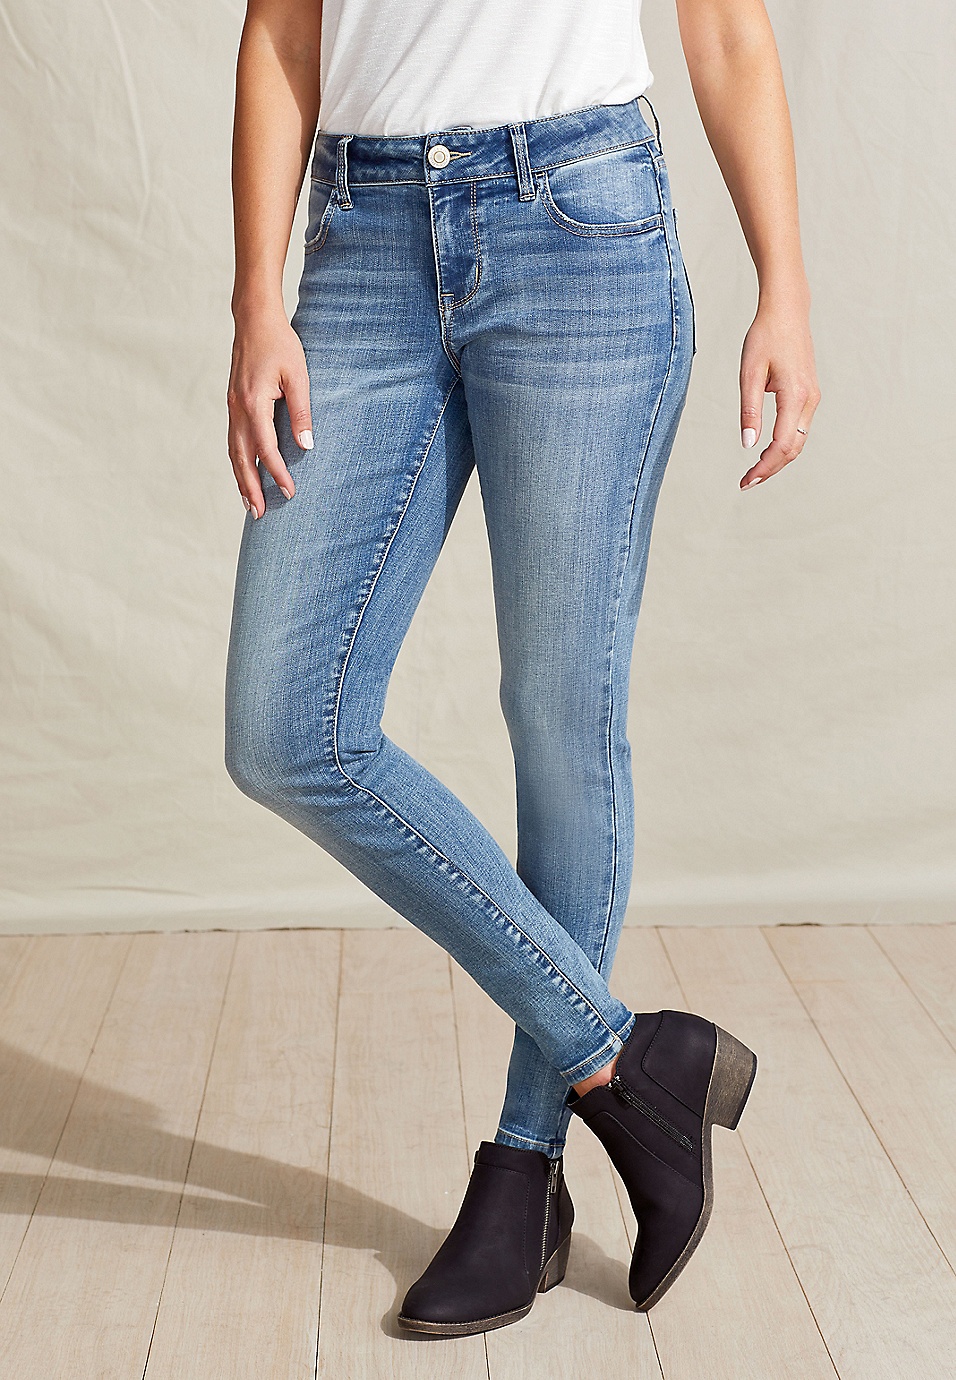 Buy online Mid Waist Denim Jegging from Jeans & jeggings for Women